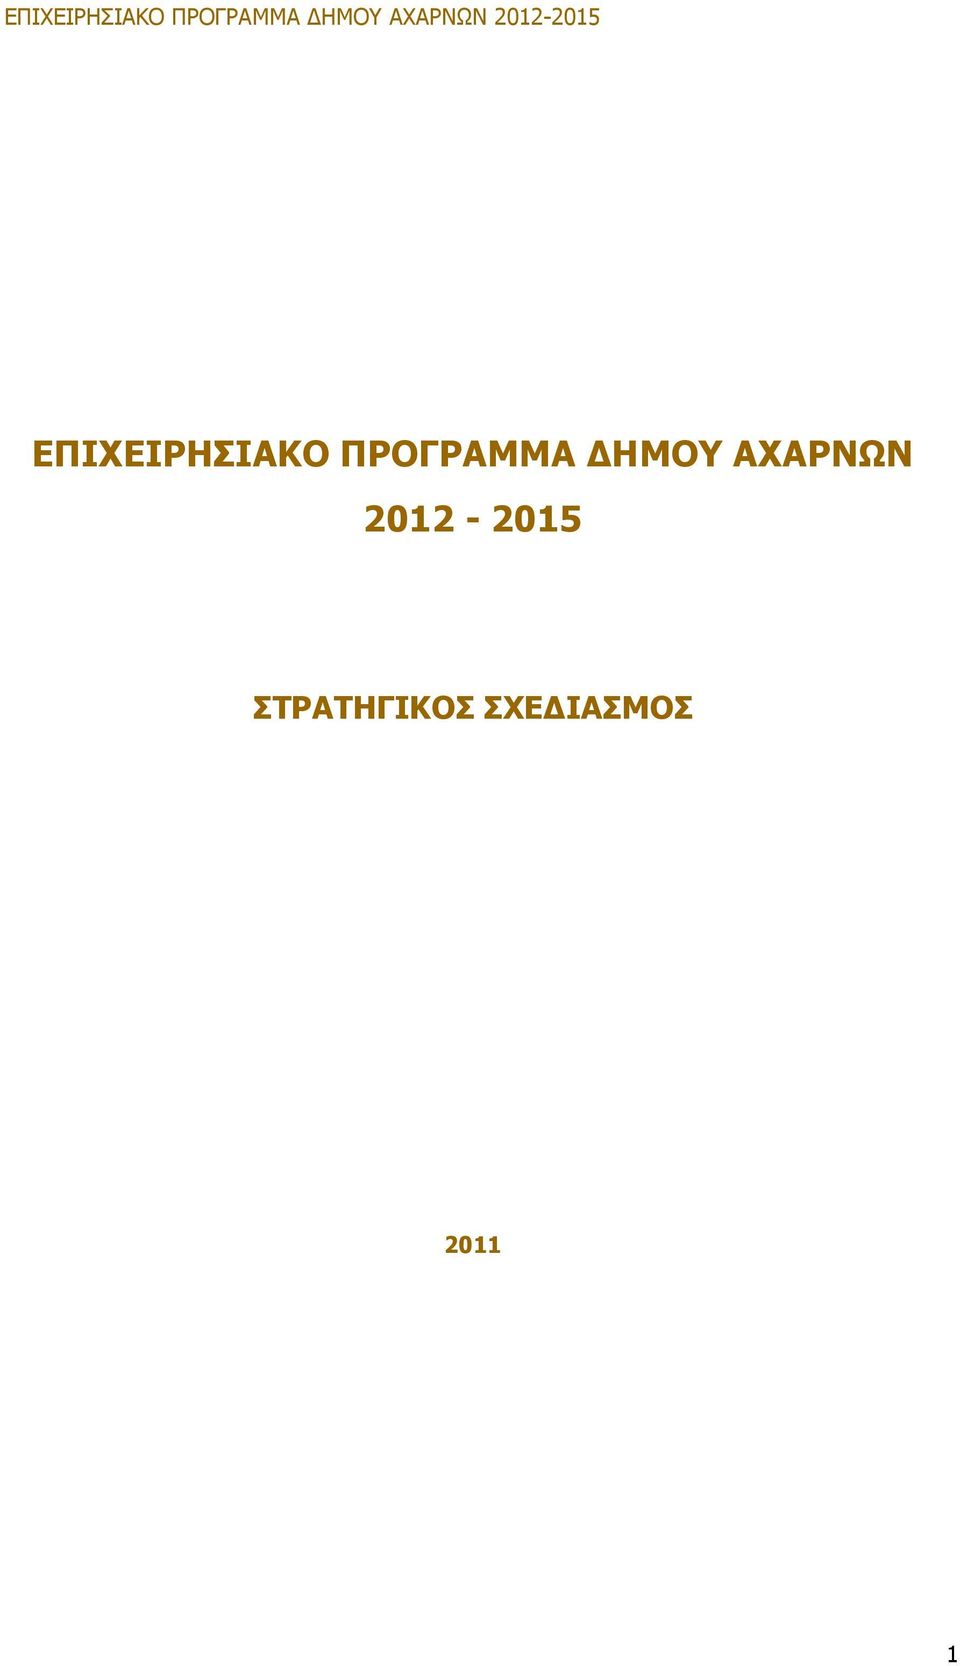 ΑΧΑΡΝΩΝ 2012-2015